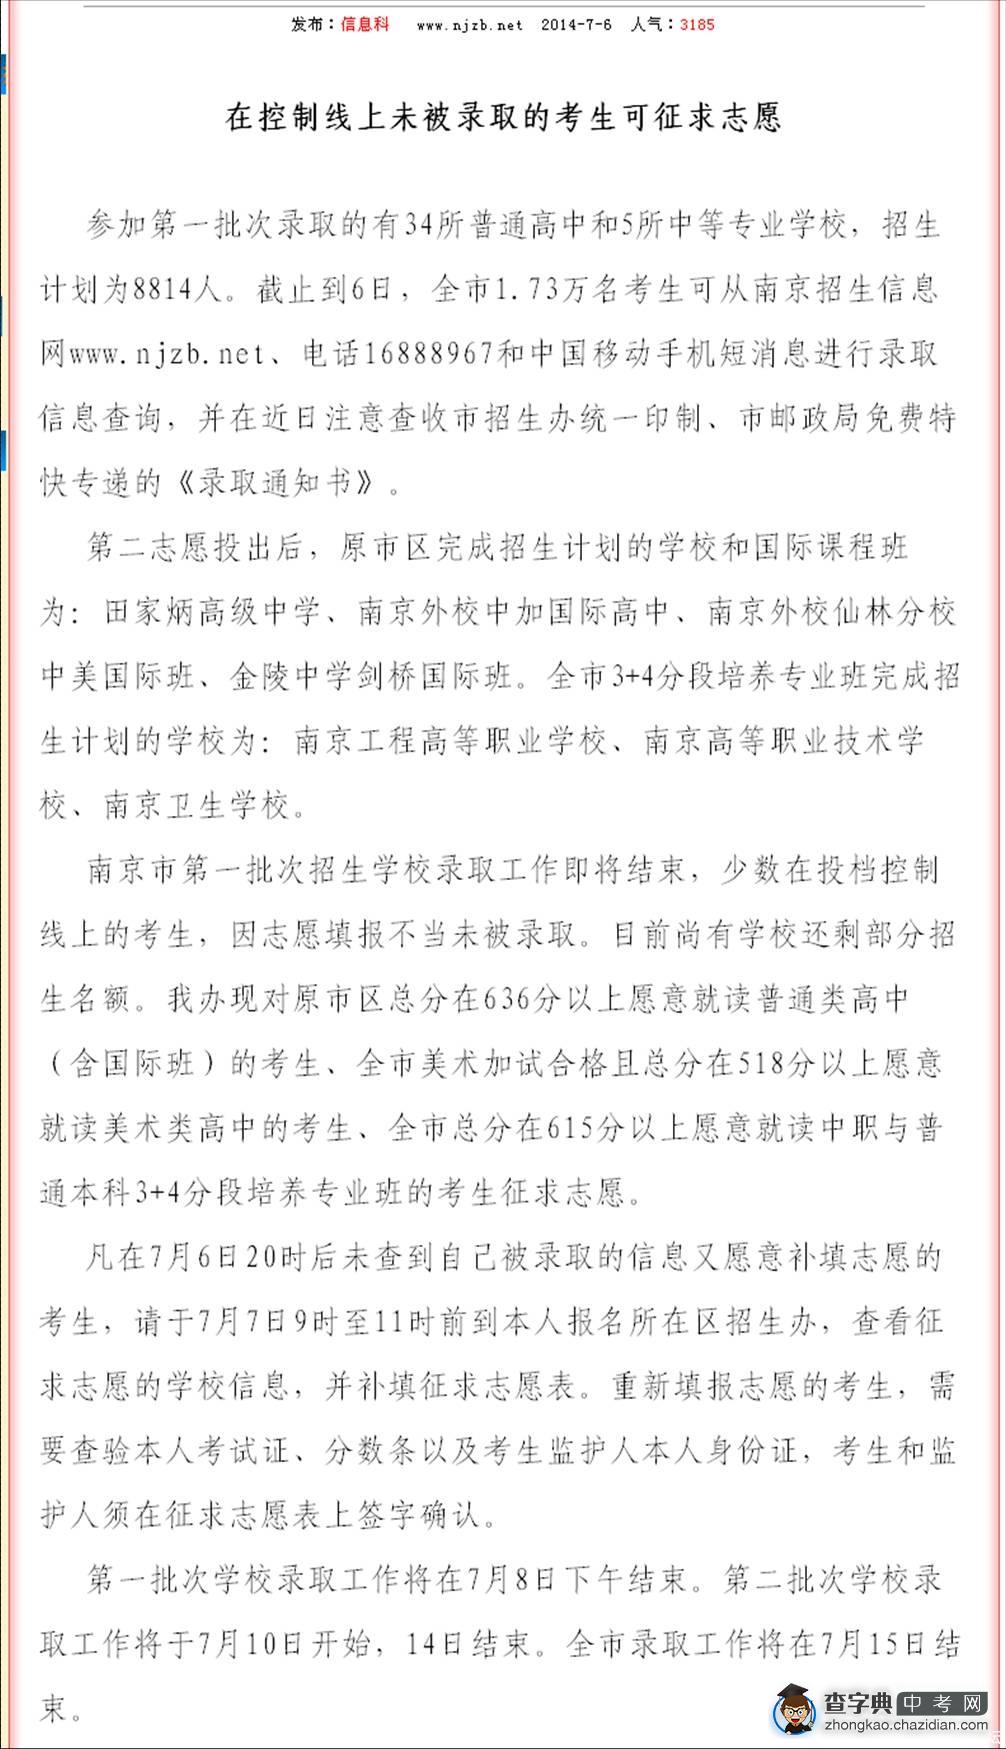 2014南京中考在控制线上未被录取的考生可征求志愿1